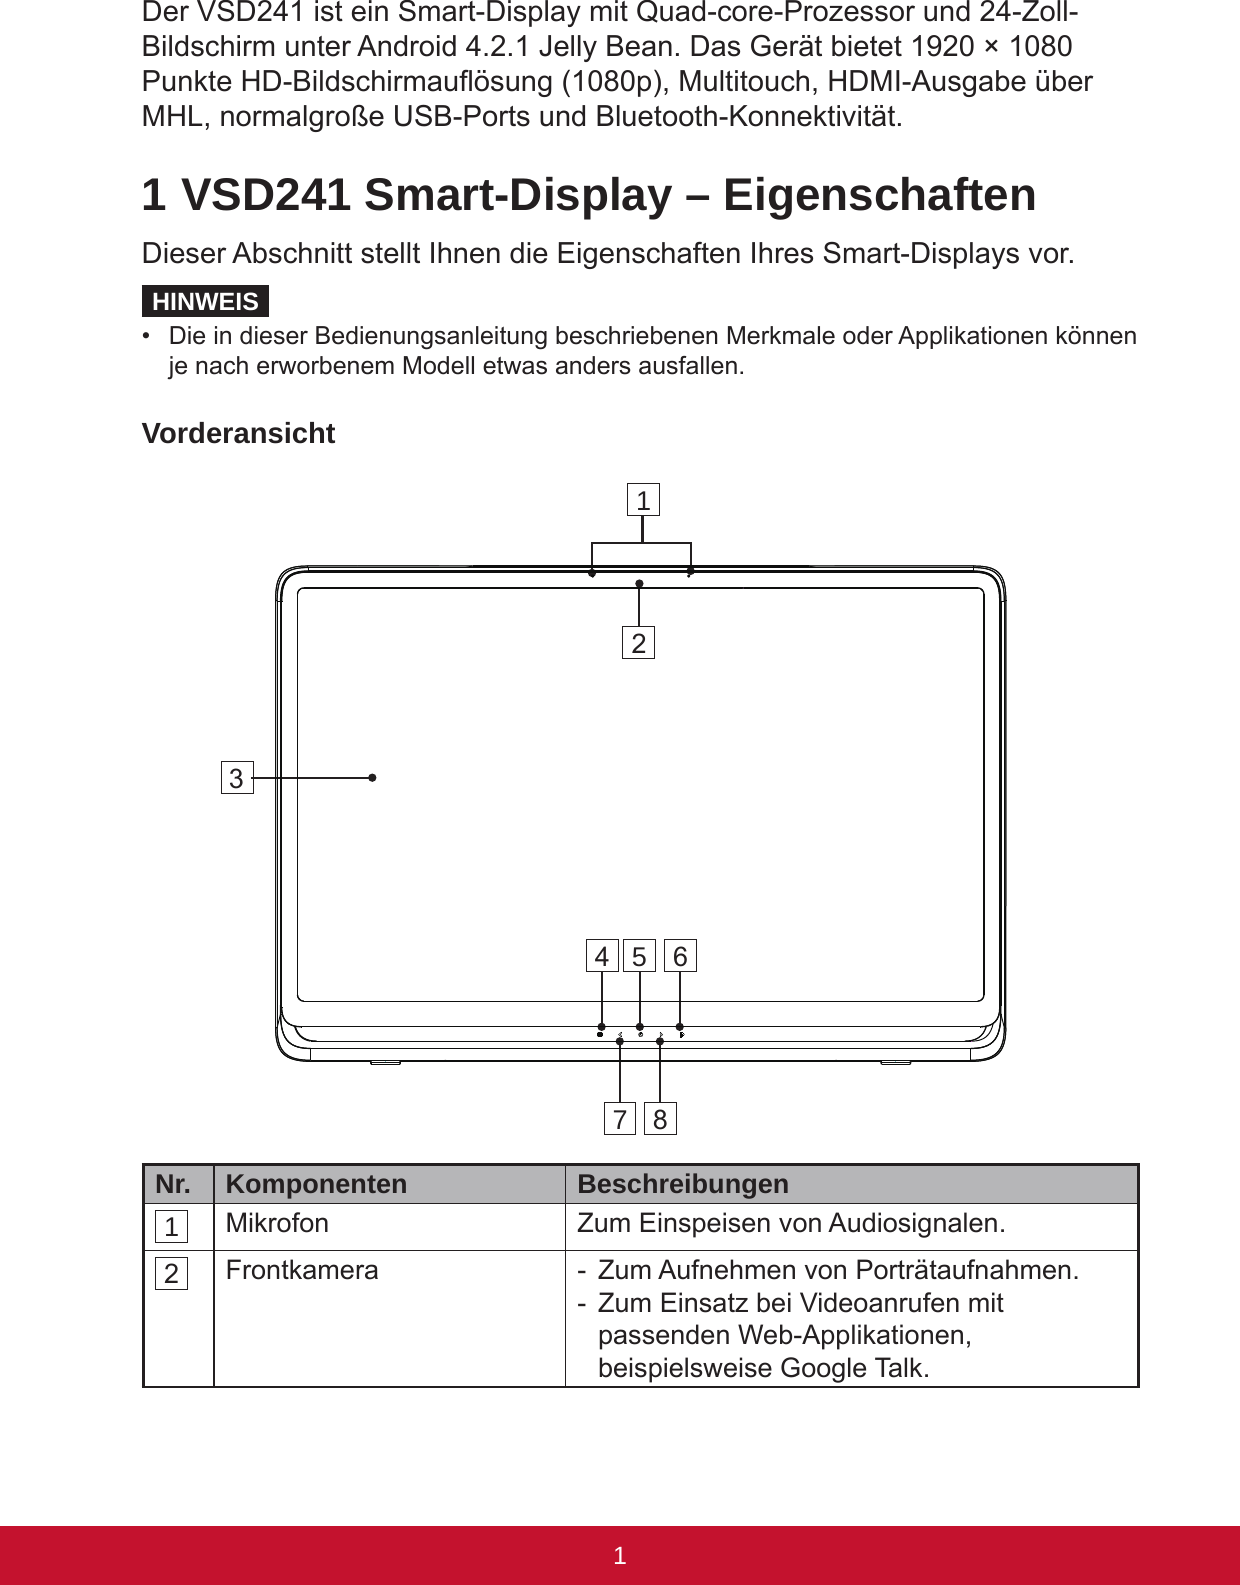 1PBDer VSD241 ist ein Smart-Display mit Quad-core-Prozessor und 24-Zoll-Bildschirm unter Android 4.2.1 Jelly Bean. Das Gerät bietet 1920 × 1080 Punkte HD-Bildschirmauösung (1080p), Multitouch, HDMI-Ausgabe über MHL, normalgroße USB-Ports und Bluetooth-Konnektivität. 1 VSD241 Smart-Display – EigenschaftenDieser Abschnitt stellt Ihnen die Eigenschaften Ihres Smart-Displays vor.HINWEIS•  Die in dieser Bedienungsanleitung beschriebenen Merkmale oder Applikationen können je nach erworbenem Modell etwas anders ausfallen.VorderansichtNr. Komponenten  Beschreibungen1 Mikrofon Zum Einspeisen von Audiosignalen.2 Frontkamera -  Zum Aufnehmen von Porträtaufnahmen. -  Zum Einsatz bei Videoanrufen mit passenden Web-Applikationen, beispielsweise Google Talk.14567823